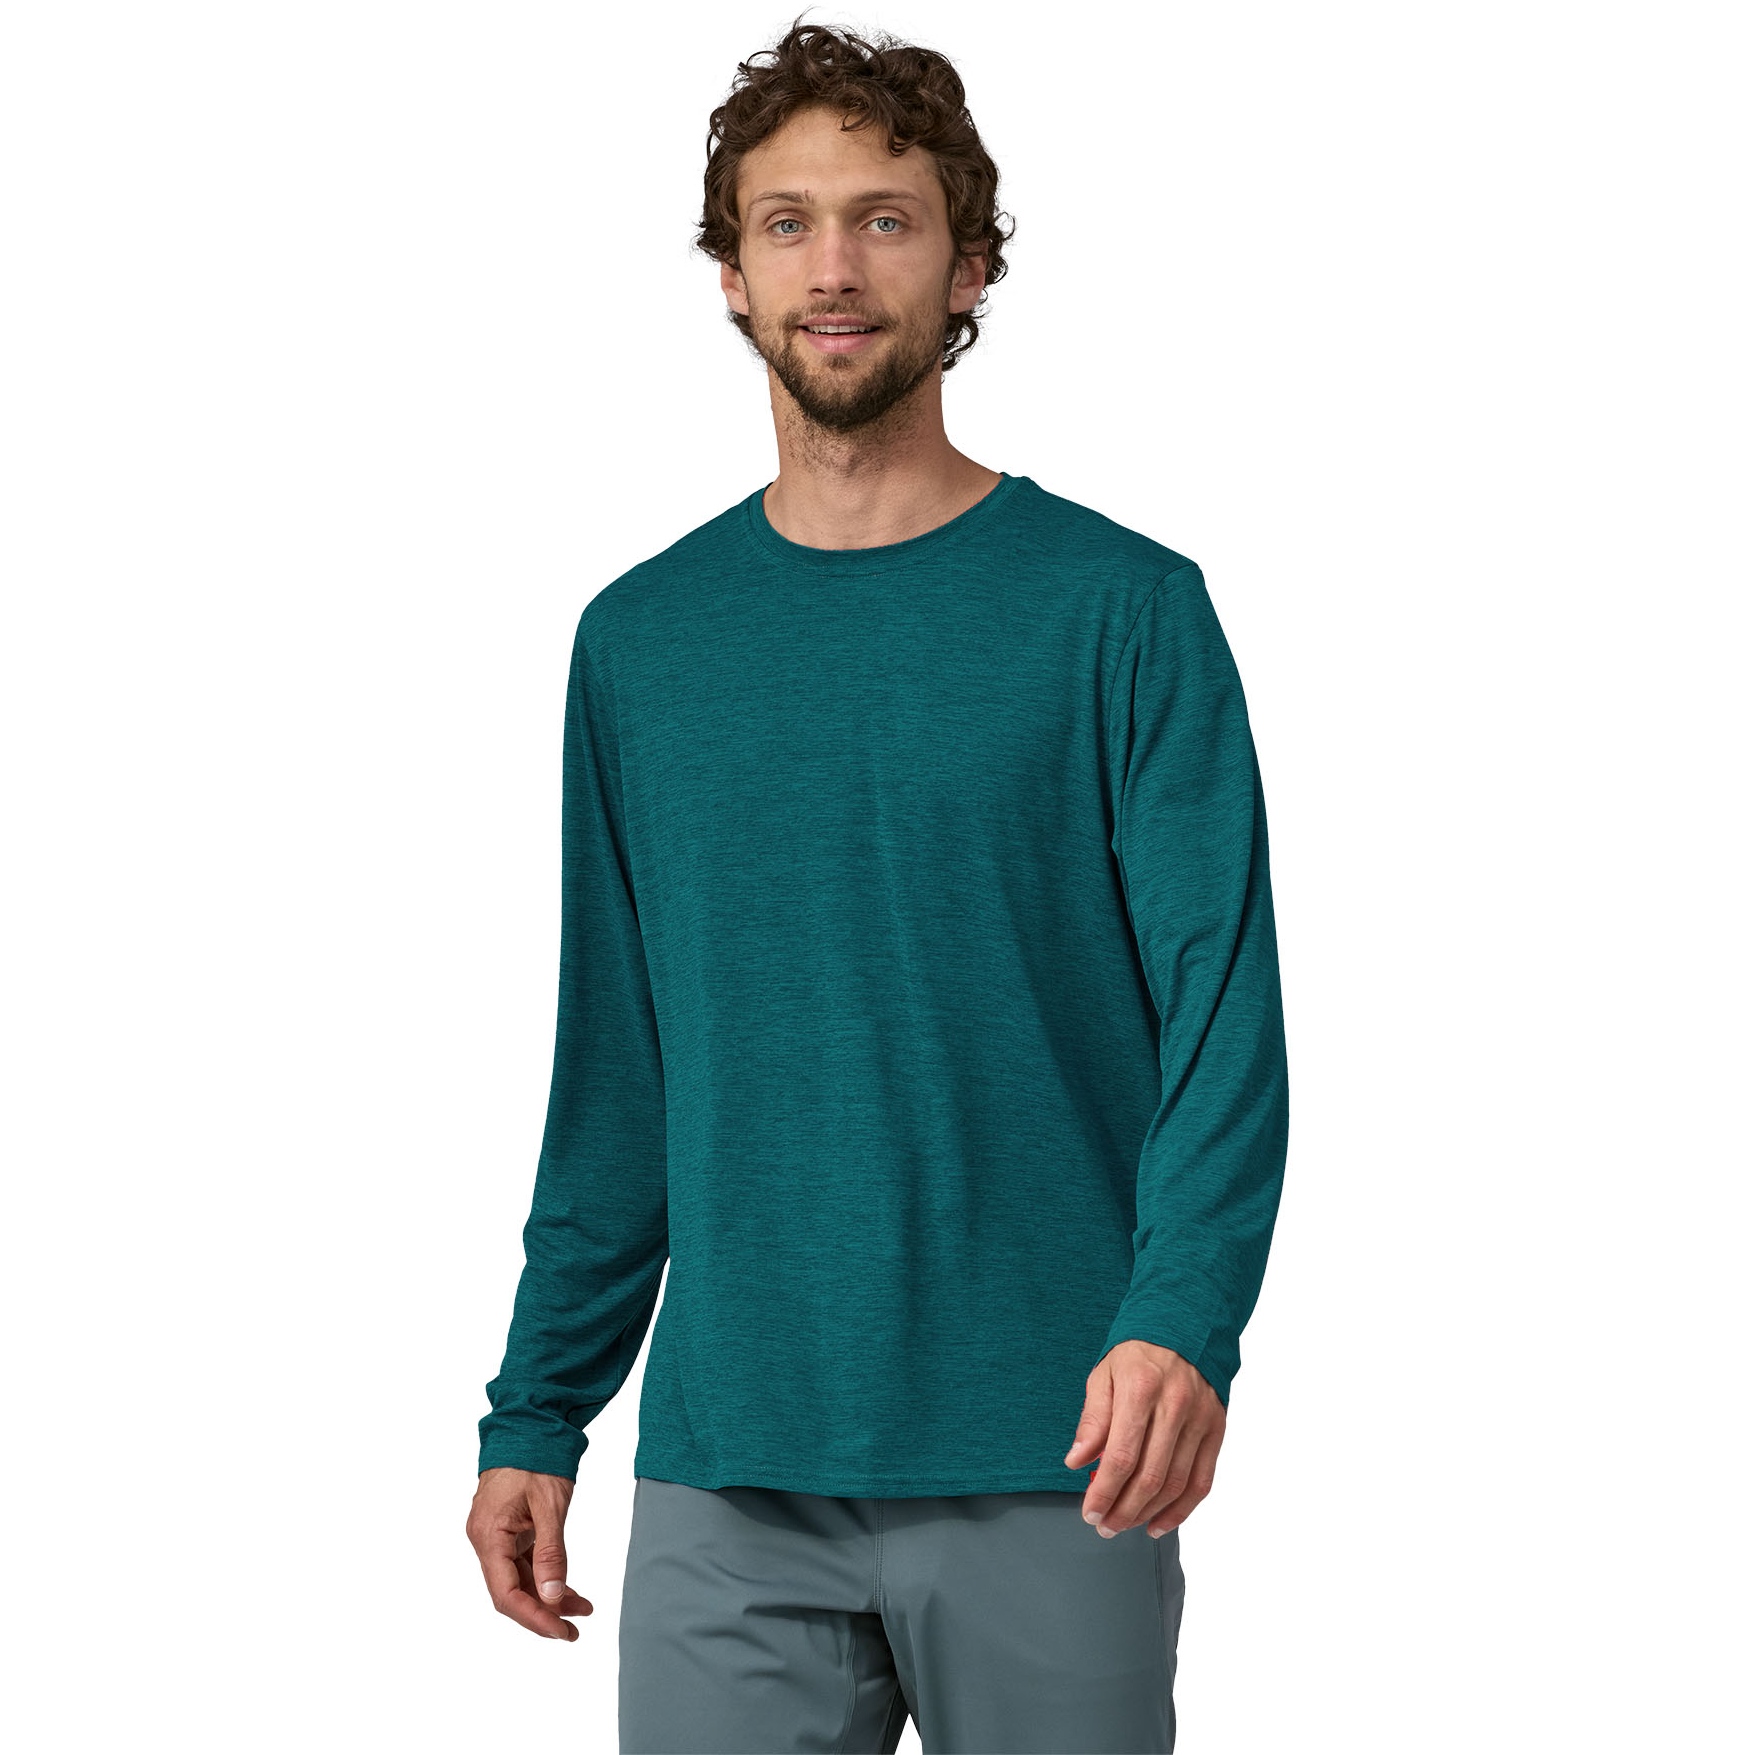 Patagonia Capilene Cool Daily Longsleeve Shirt Men - Buckhorn Green - Light  Buckhorn Green X-Dye